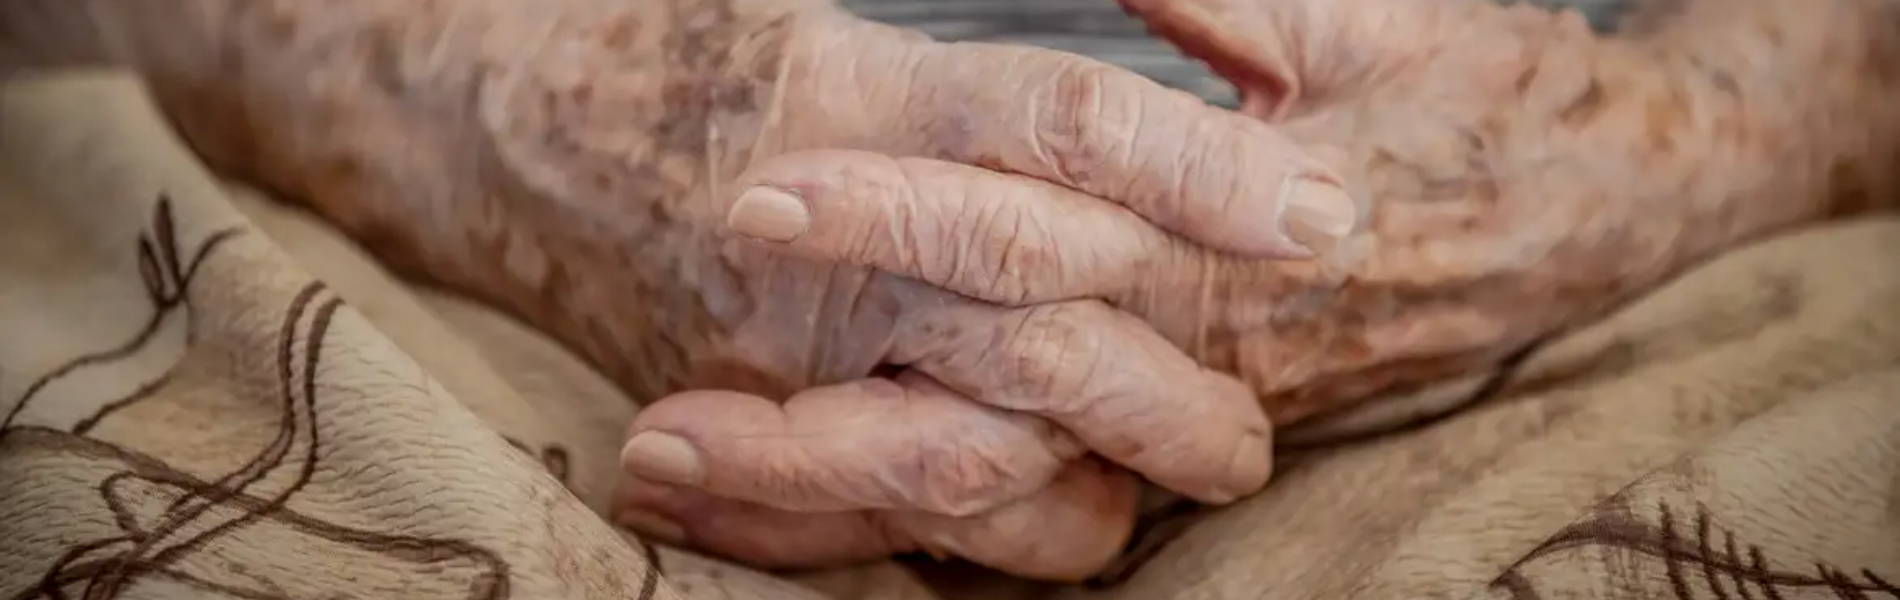 Imagem em close up de mãos de idosos entrelaçadas